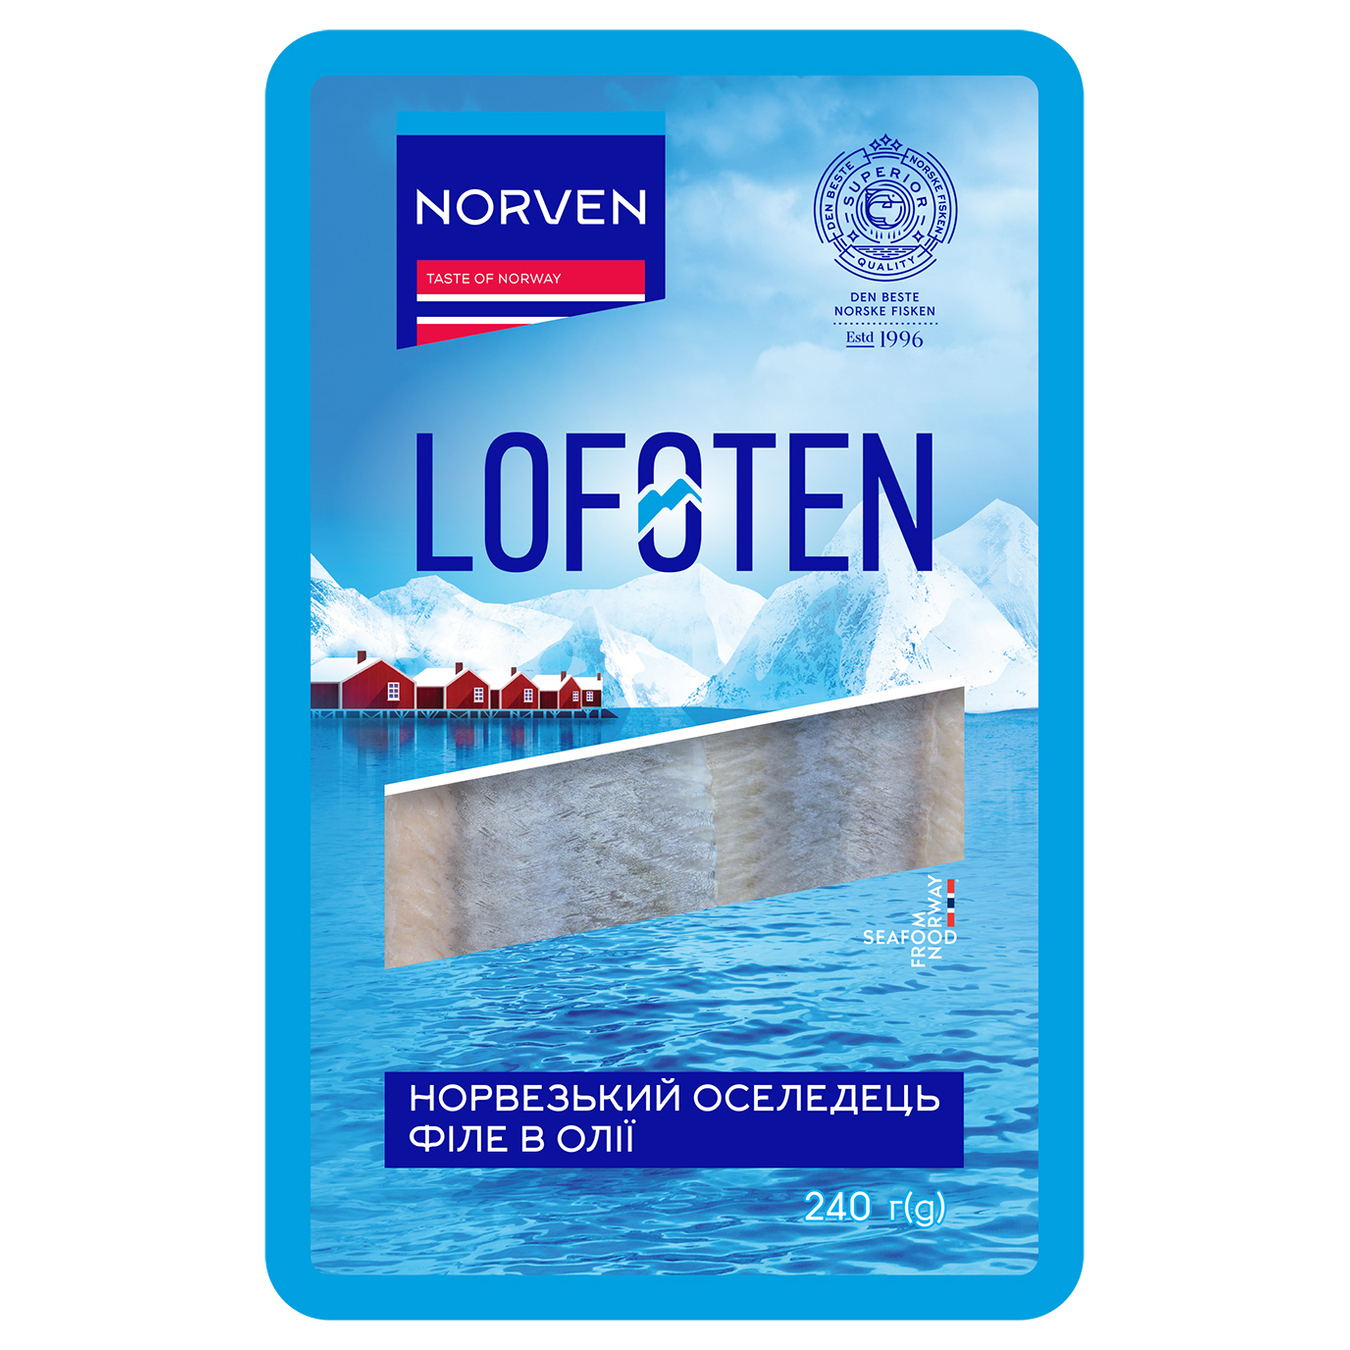 Norven Lofoten Herring Fillets in Oil 240g